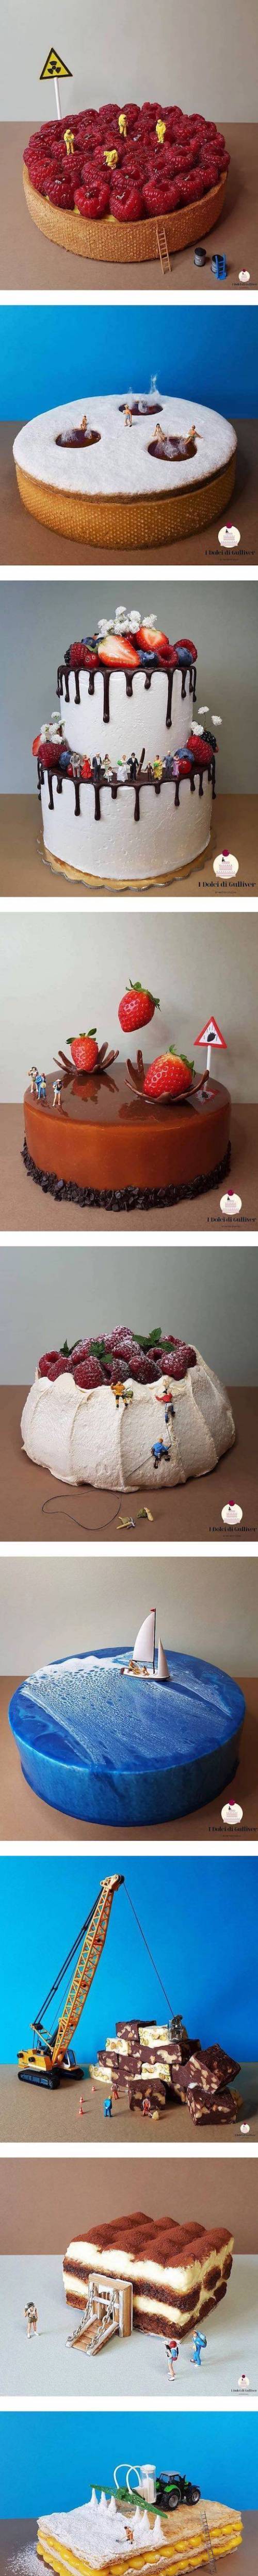 8 케익으로 만든 미니어처 월드.jpg